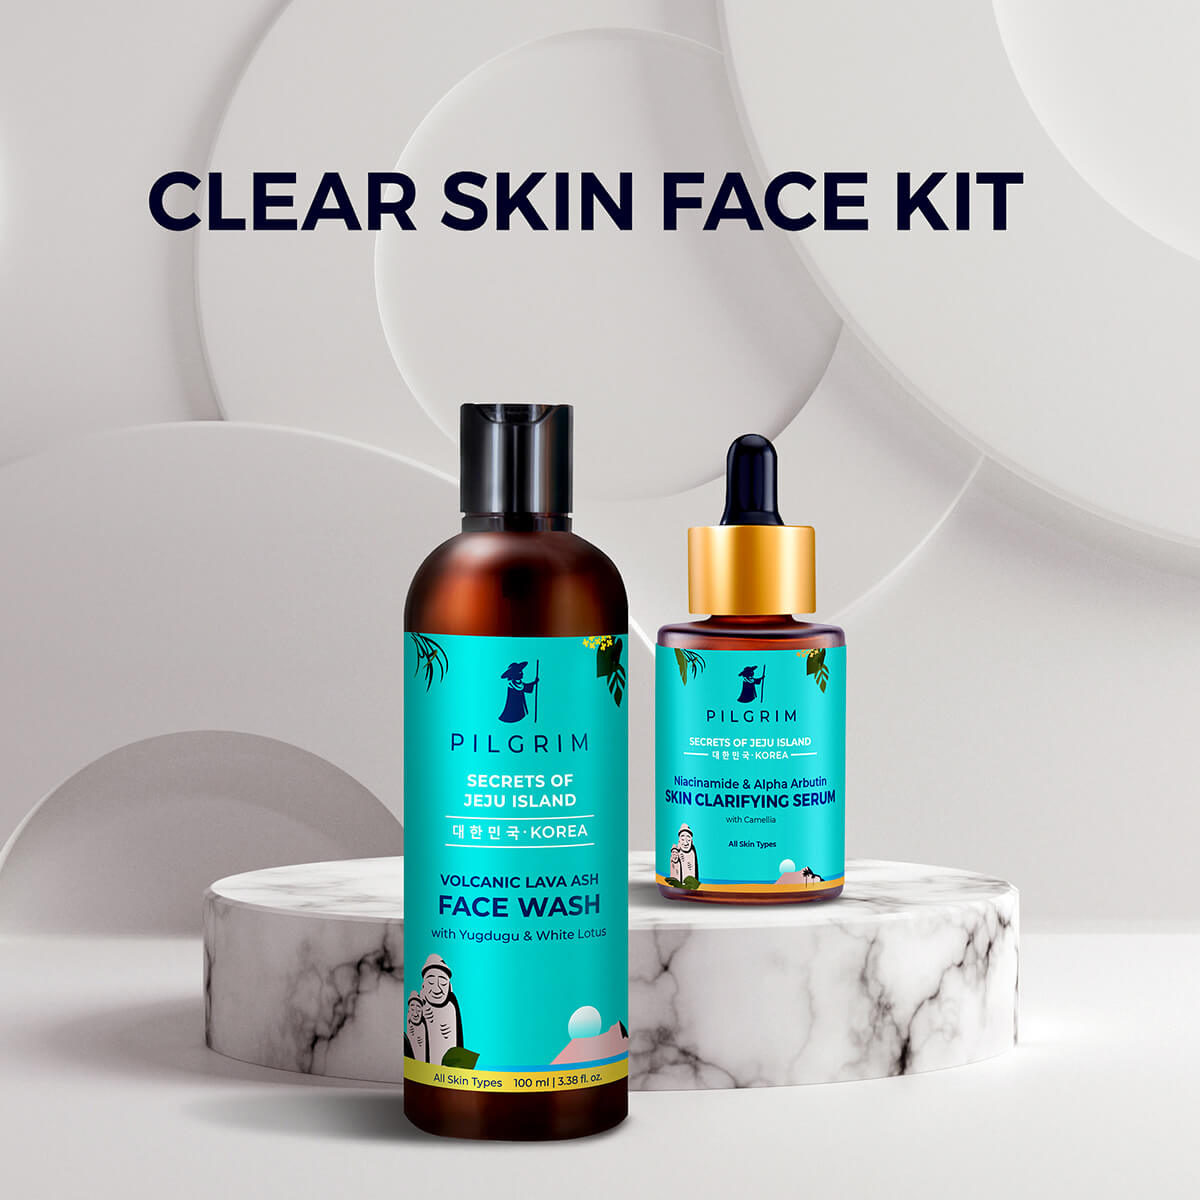 Clear Skin Face Kit